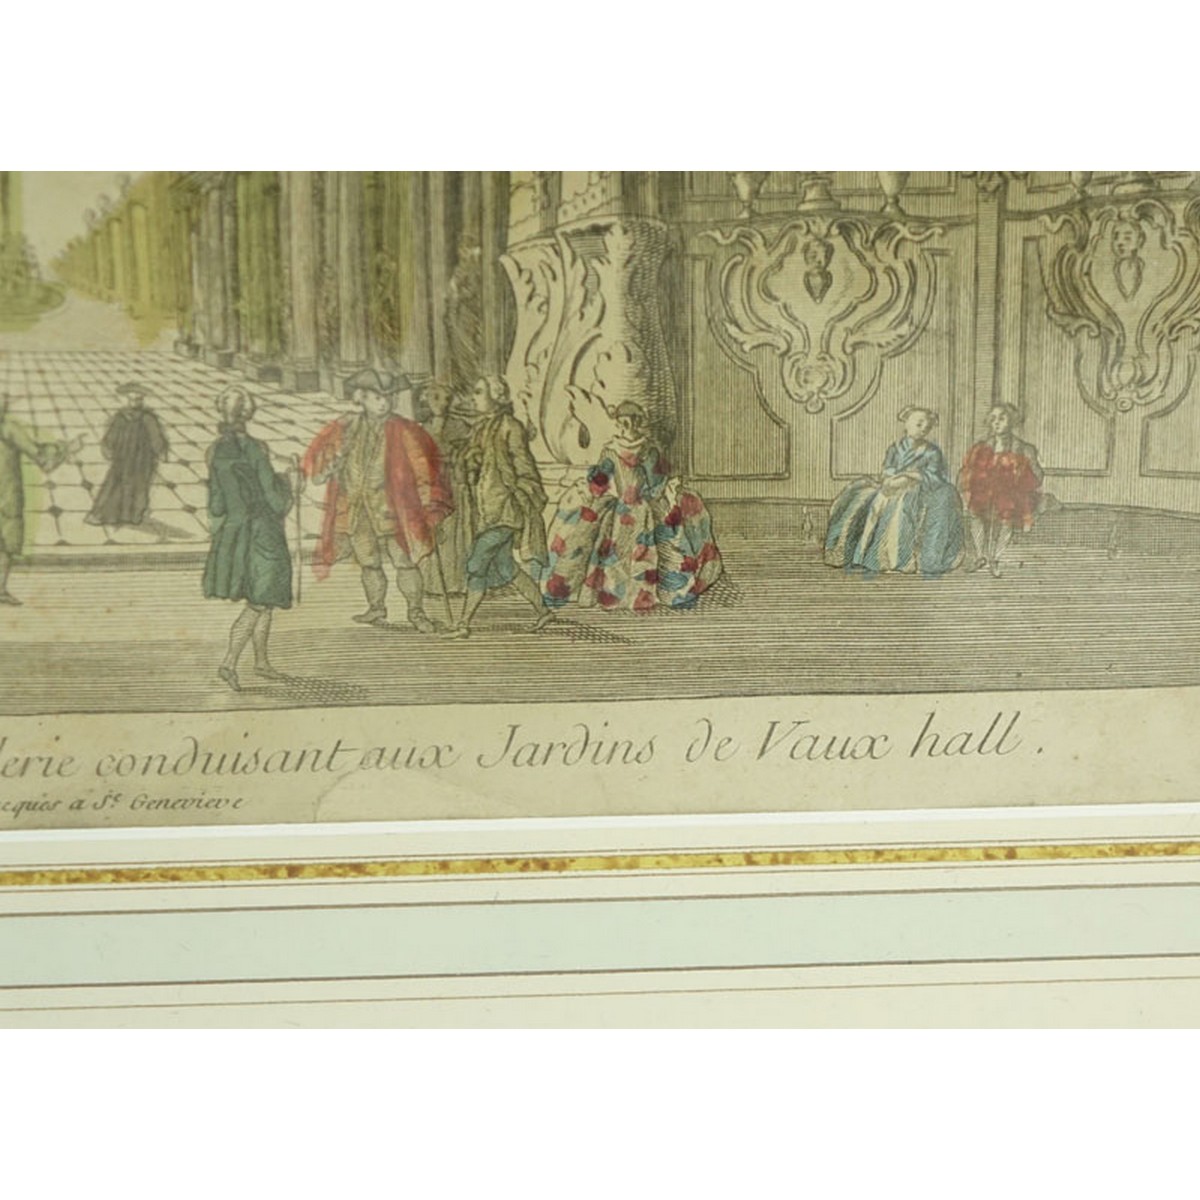 17/18th French School Hand Color Engraving, Vue Interieure d’une Belle Galerie Conduisant aux Jardins de Vaux Hall, a Pris chez Basset S. Jacques a Genevieve, no 188.